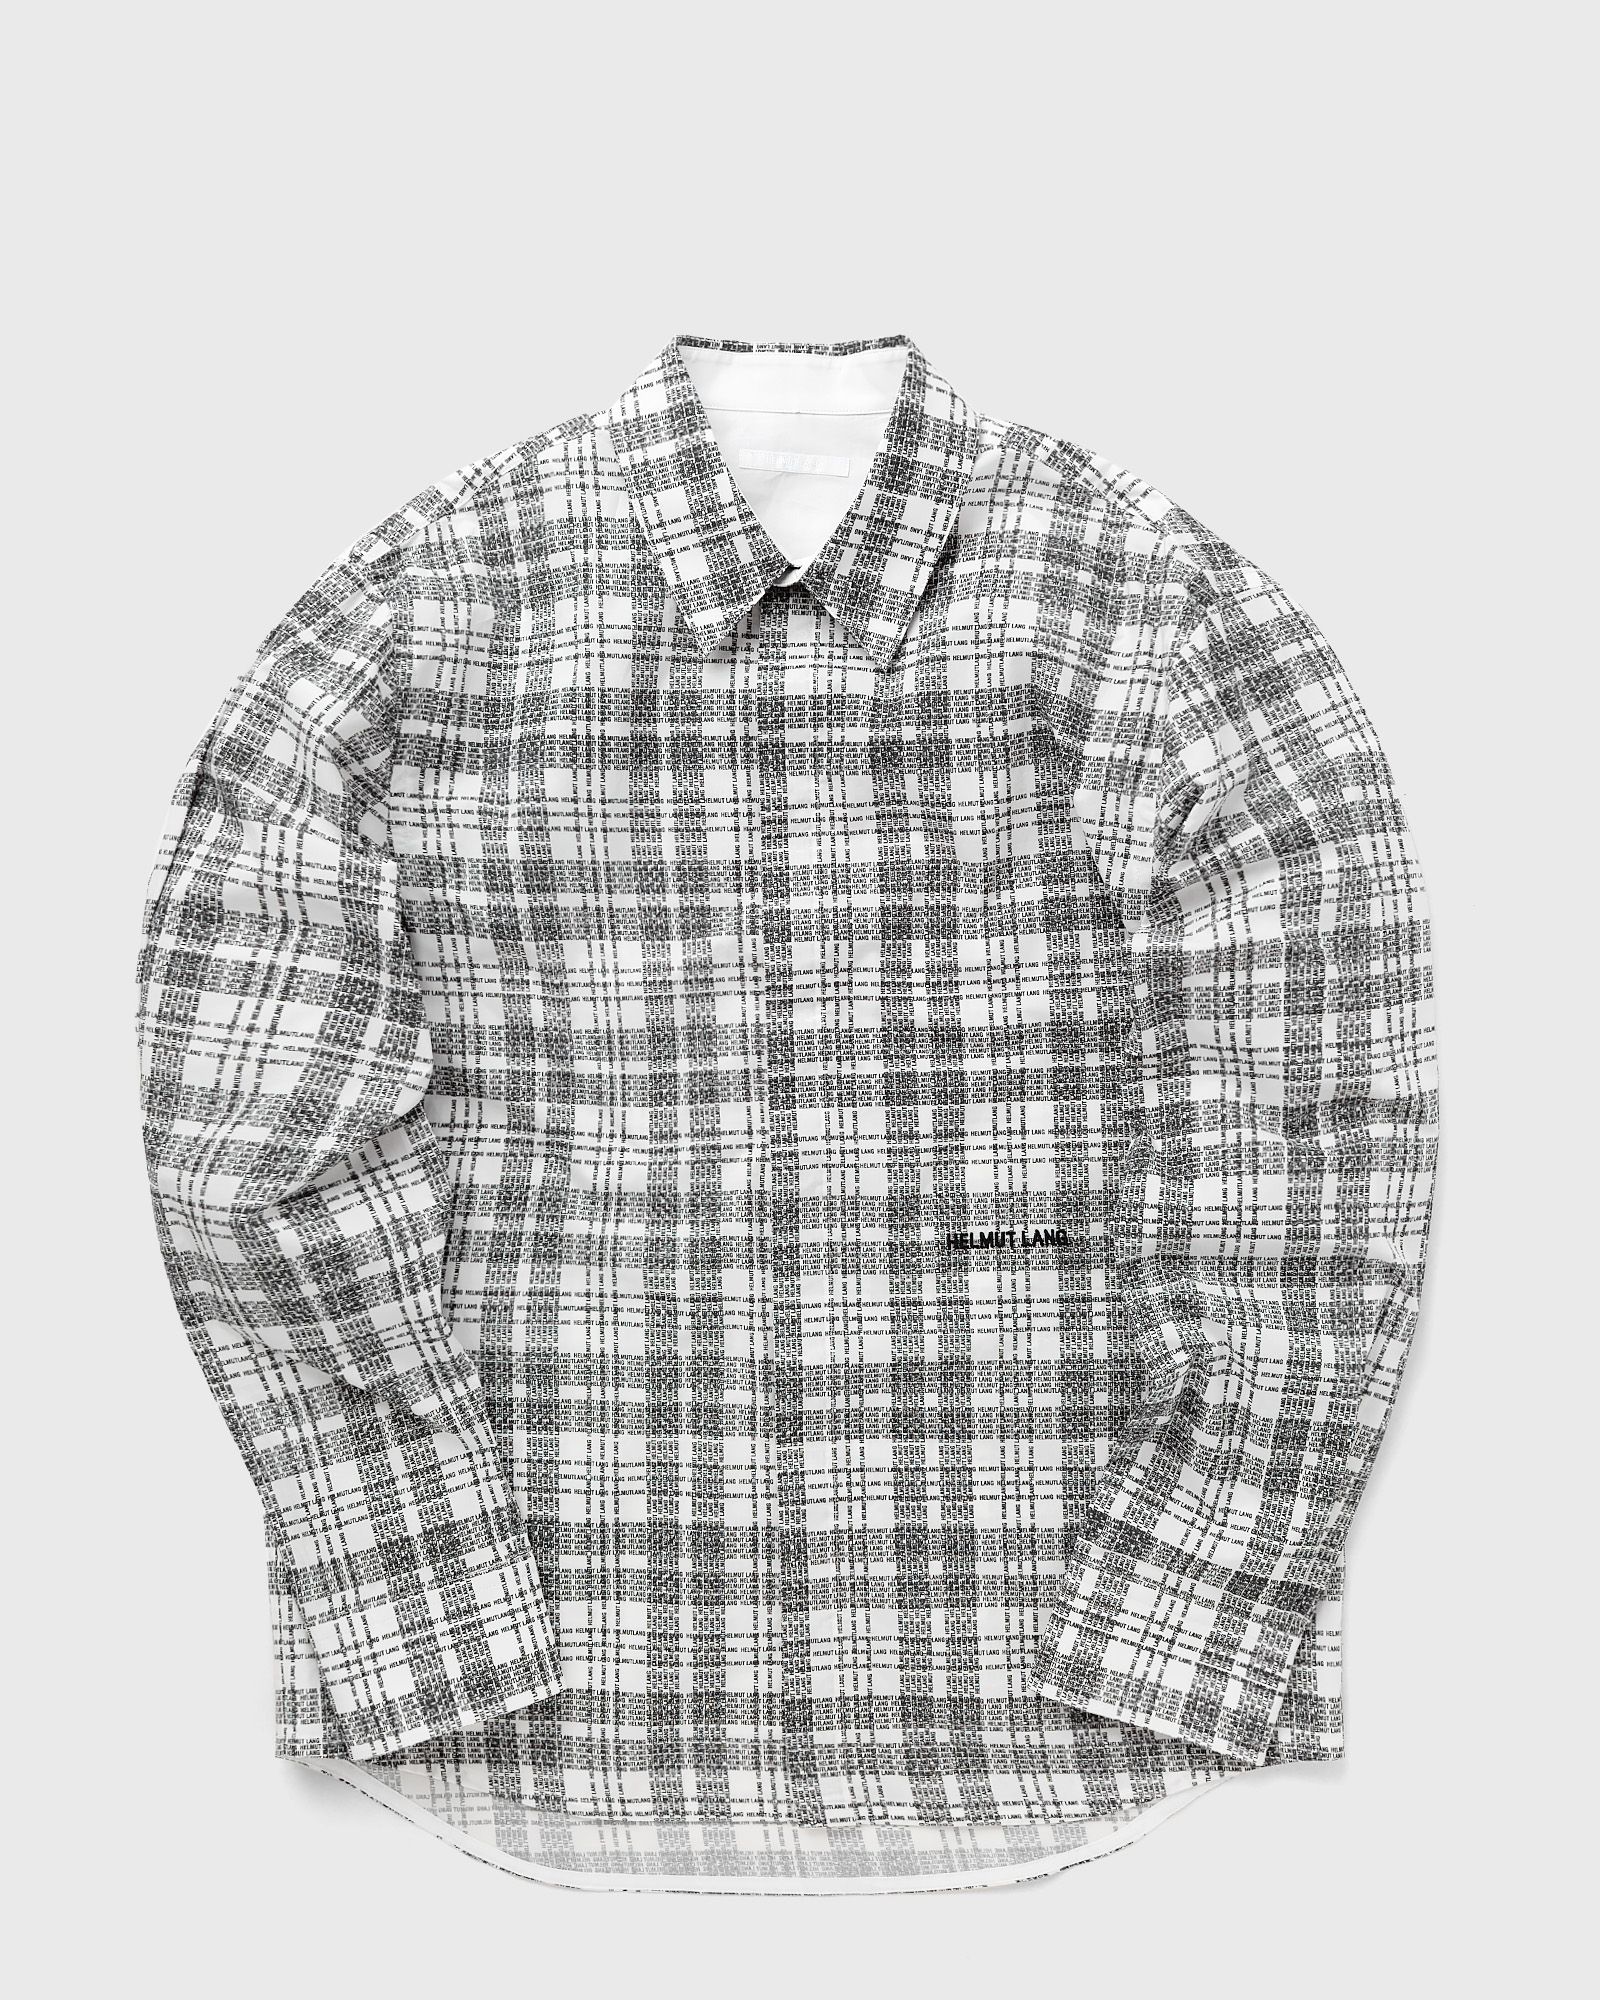 Helmut Lang - printed shirt men longsleeves black|white in größe:l